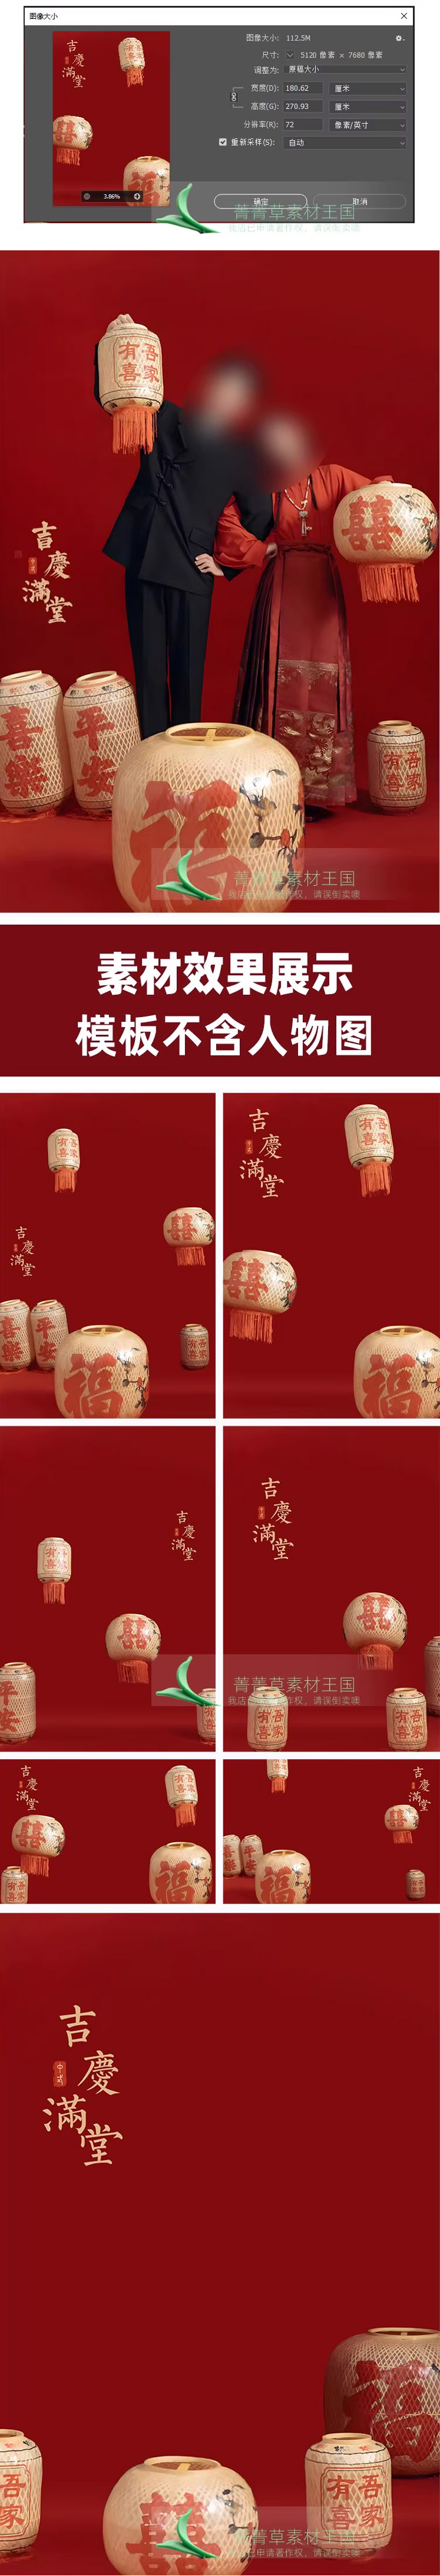 Psd-0446, Bộ 7 Psd Mẫu Studio ảnh Hậu Kì Nền Ghép ảnh đám Cưới Mới Phong Cách Trung Quốc Trang Phục Truyền Thống 2